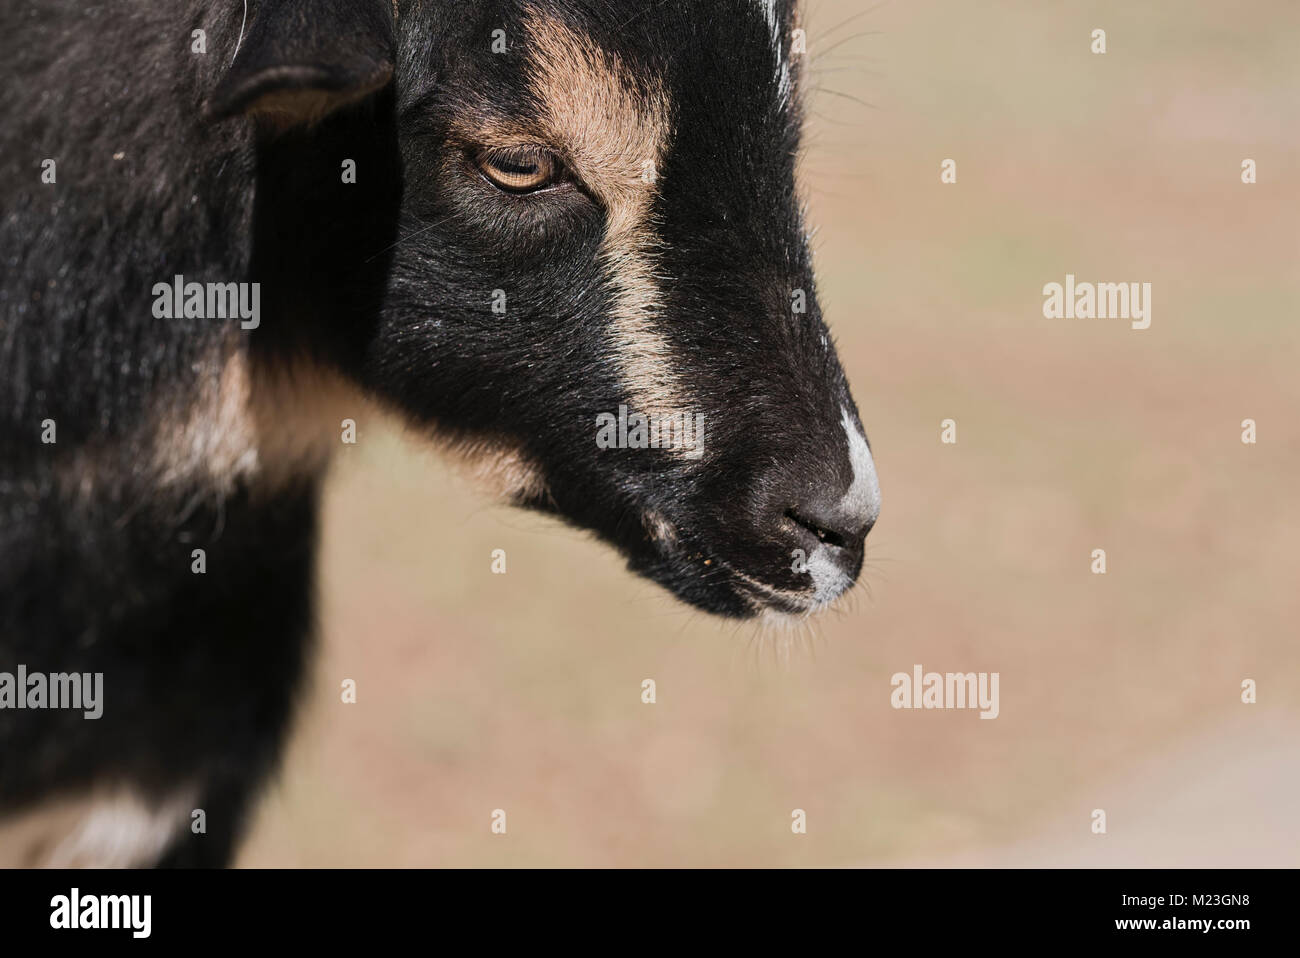 Cerca de cabra enana nigeriano en vertical Foto de stock